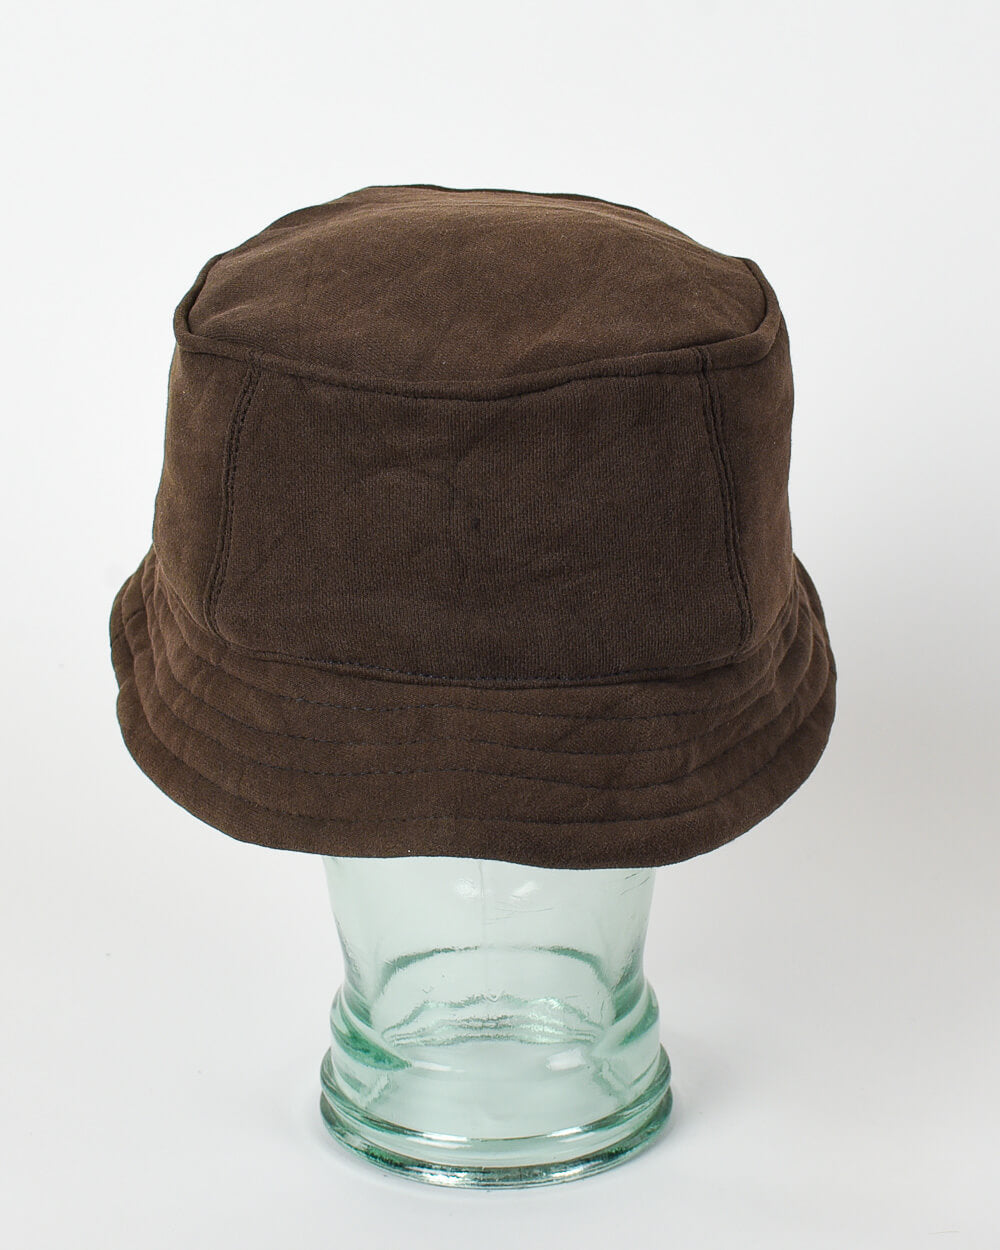 https://domno-vintage.com/cdn/shop/products/45-Vintage-Vintage-Hat-3.jpg?v=1658330302&width=1000